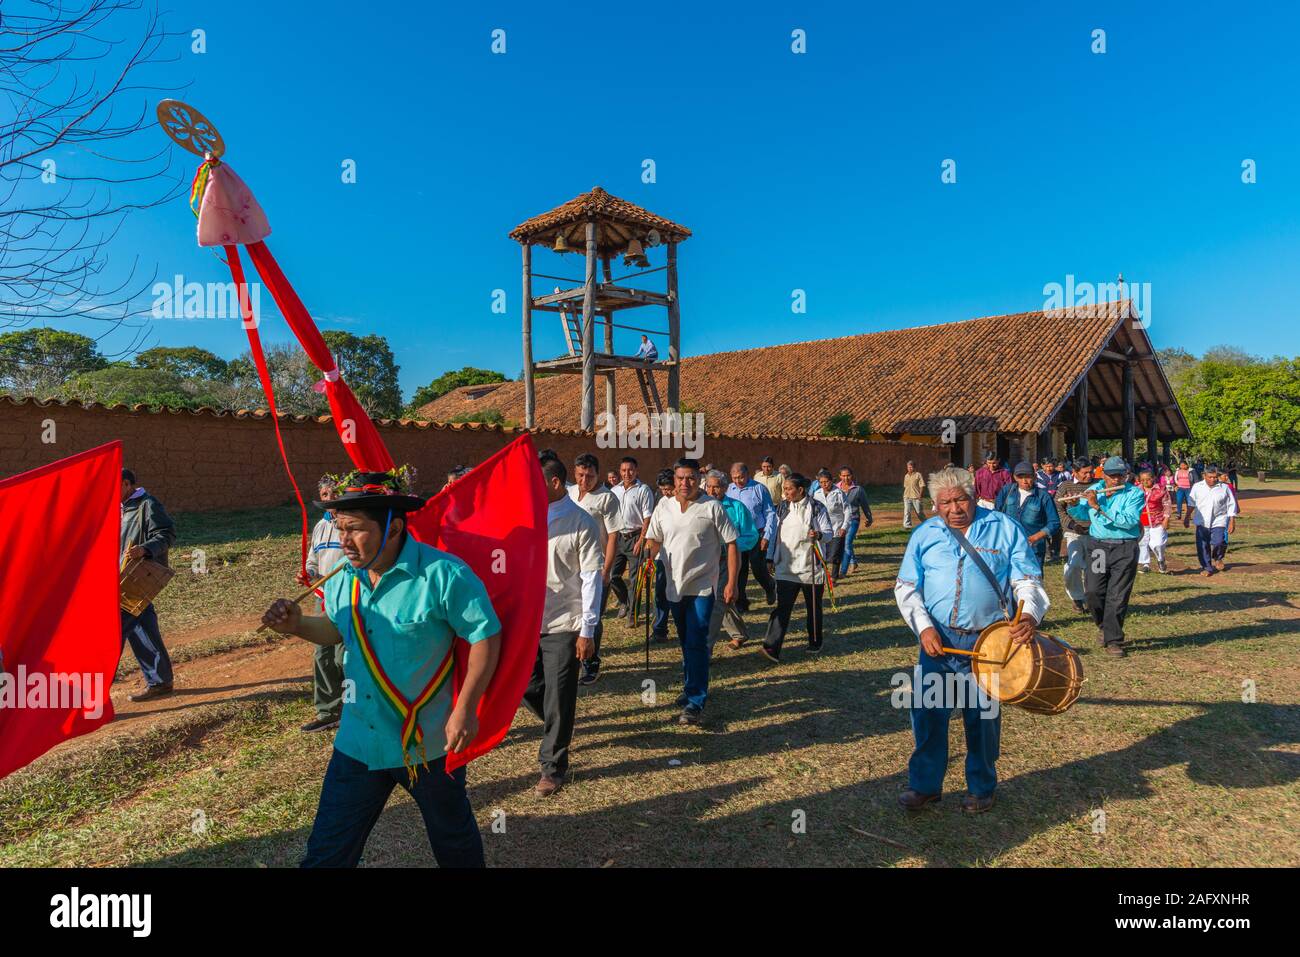 Feria ou procession religieuse à la mission jésuite Santa Ana, Circuit, Jésuite, de la Bolivie, des basses terres de l'Amérique latine Banque D'Images